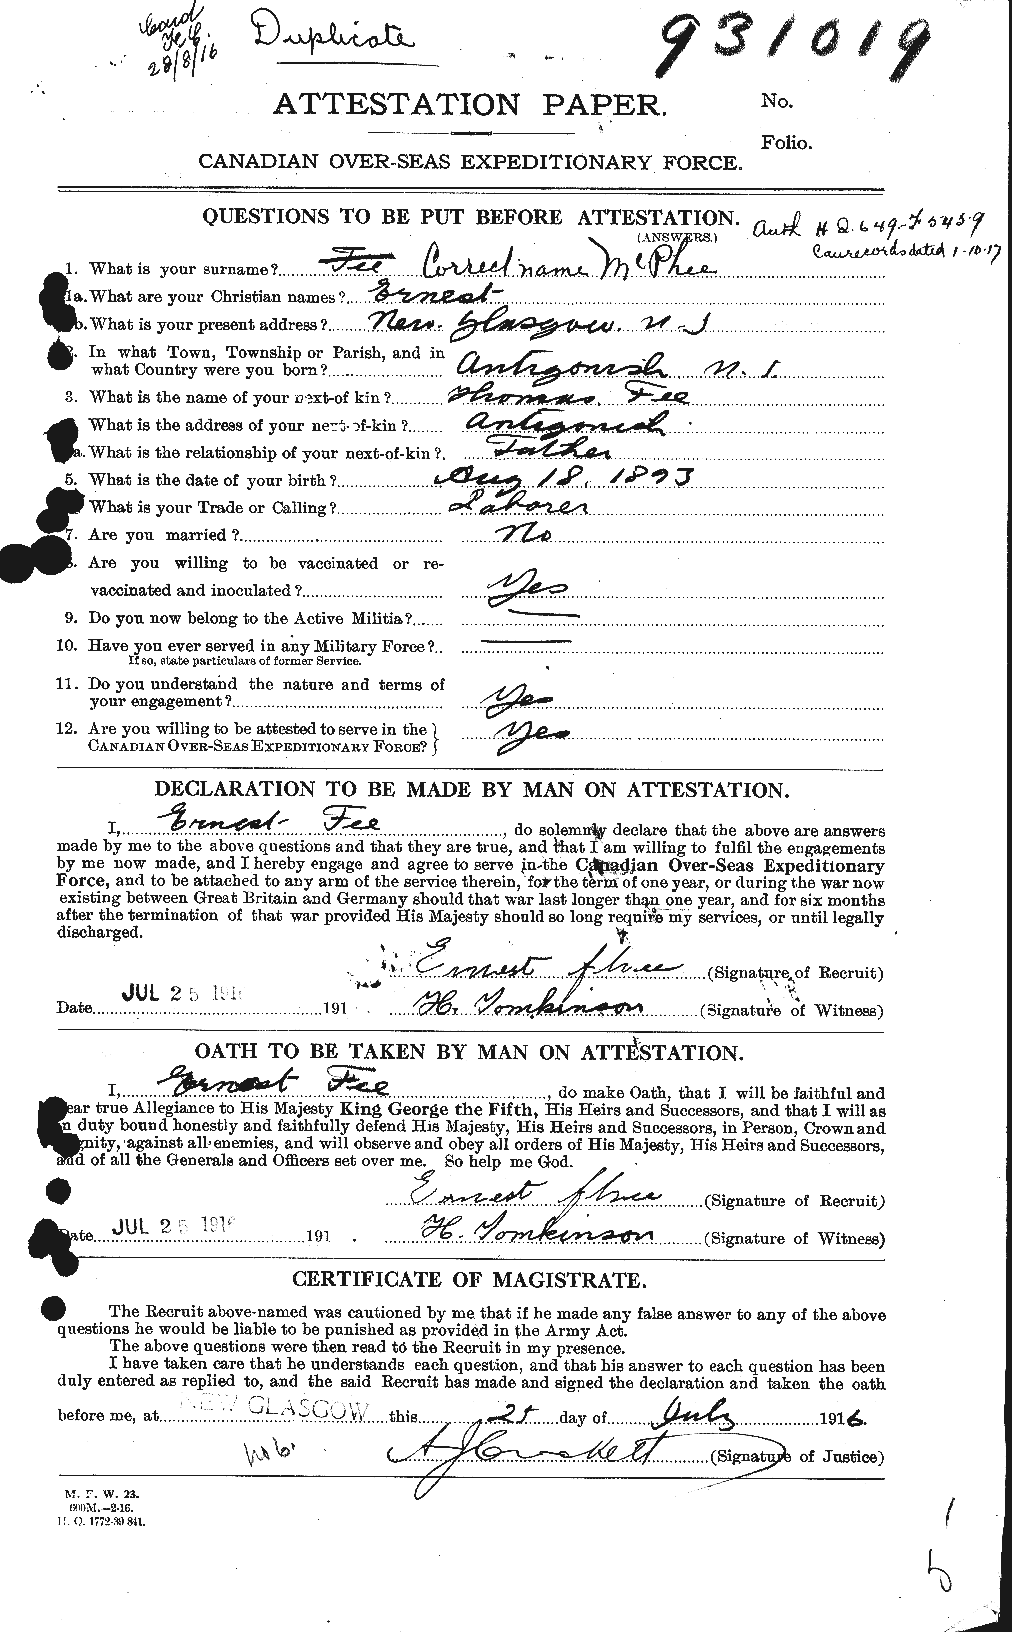 Dossiers du Personnel de la Première Guerre mondiale - CEC 541044a